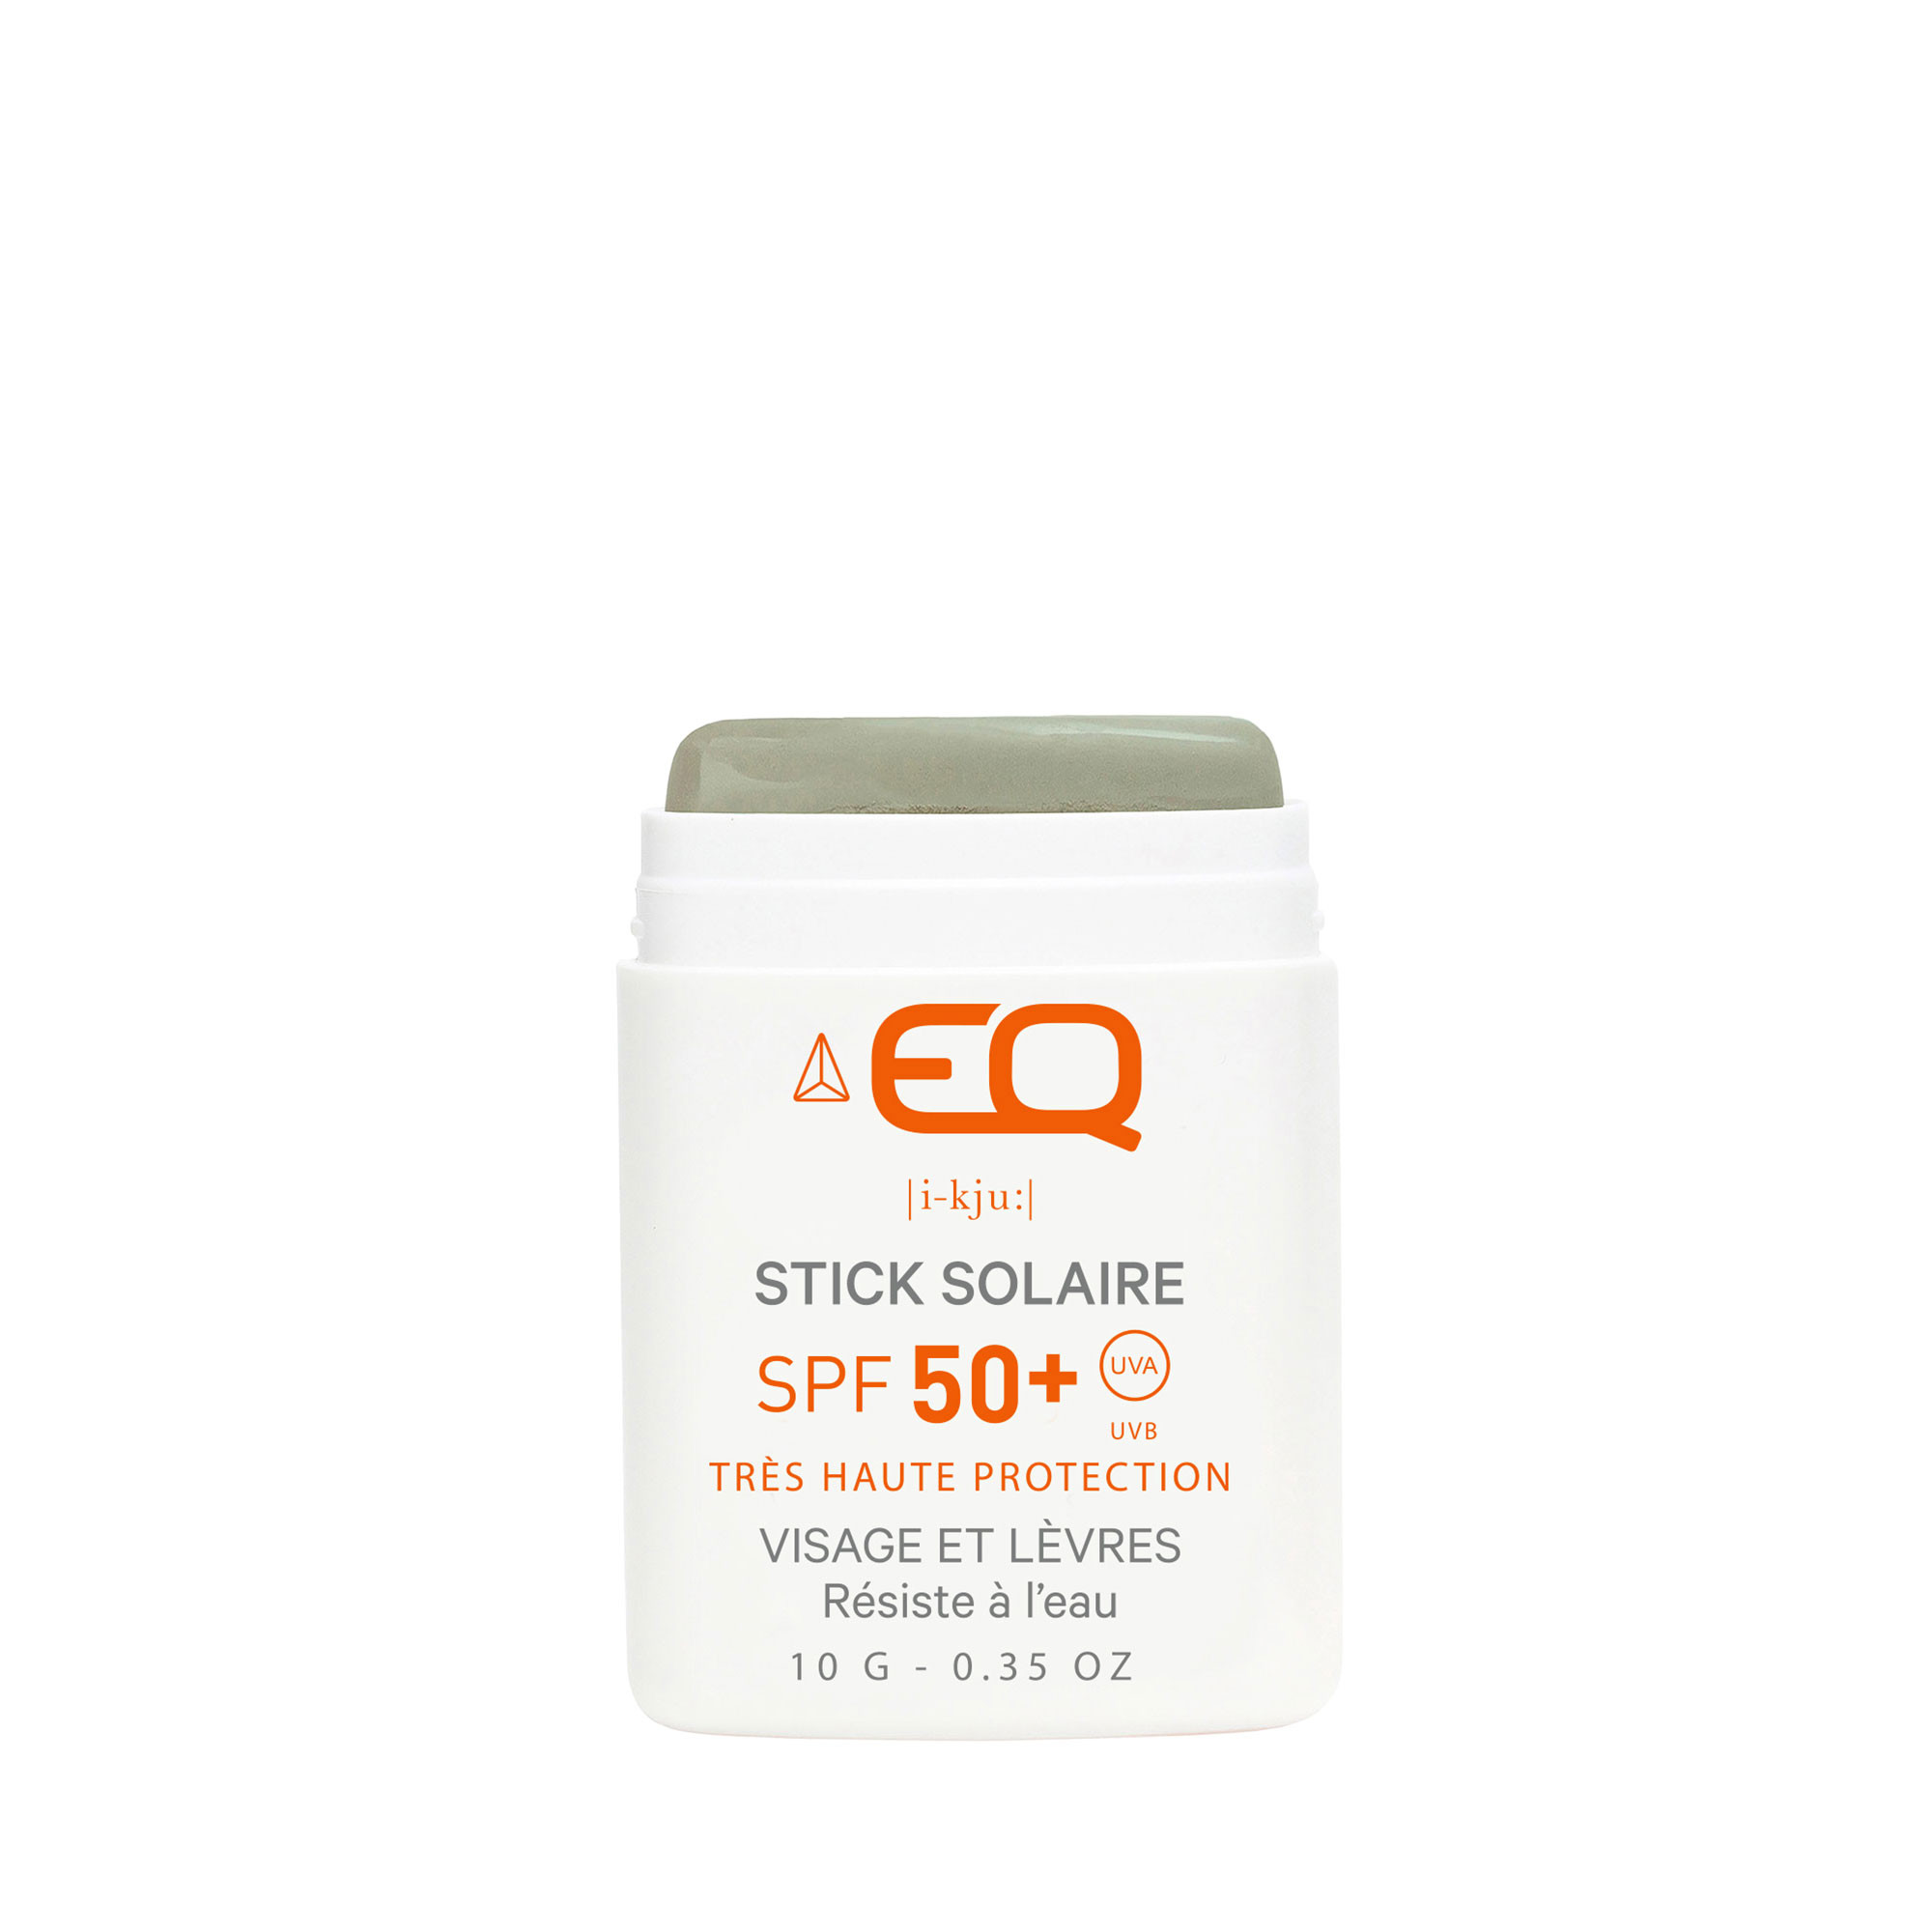 Stick Solaire kaki SPF50+ EQ filtre minéraux